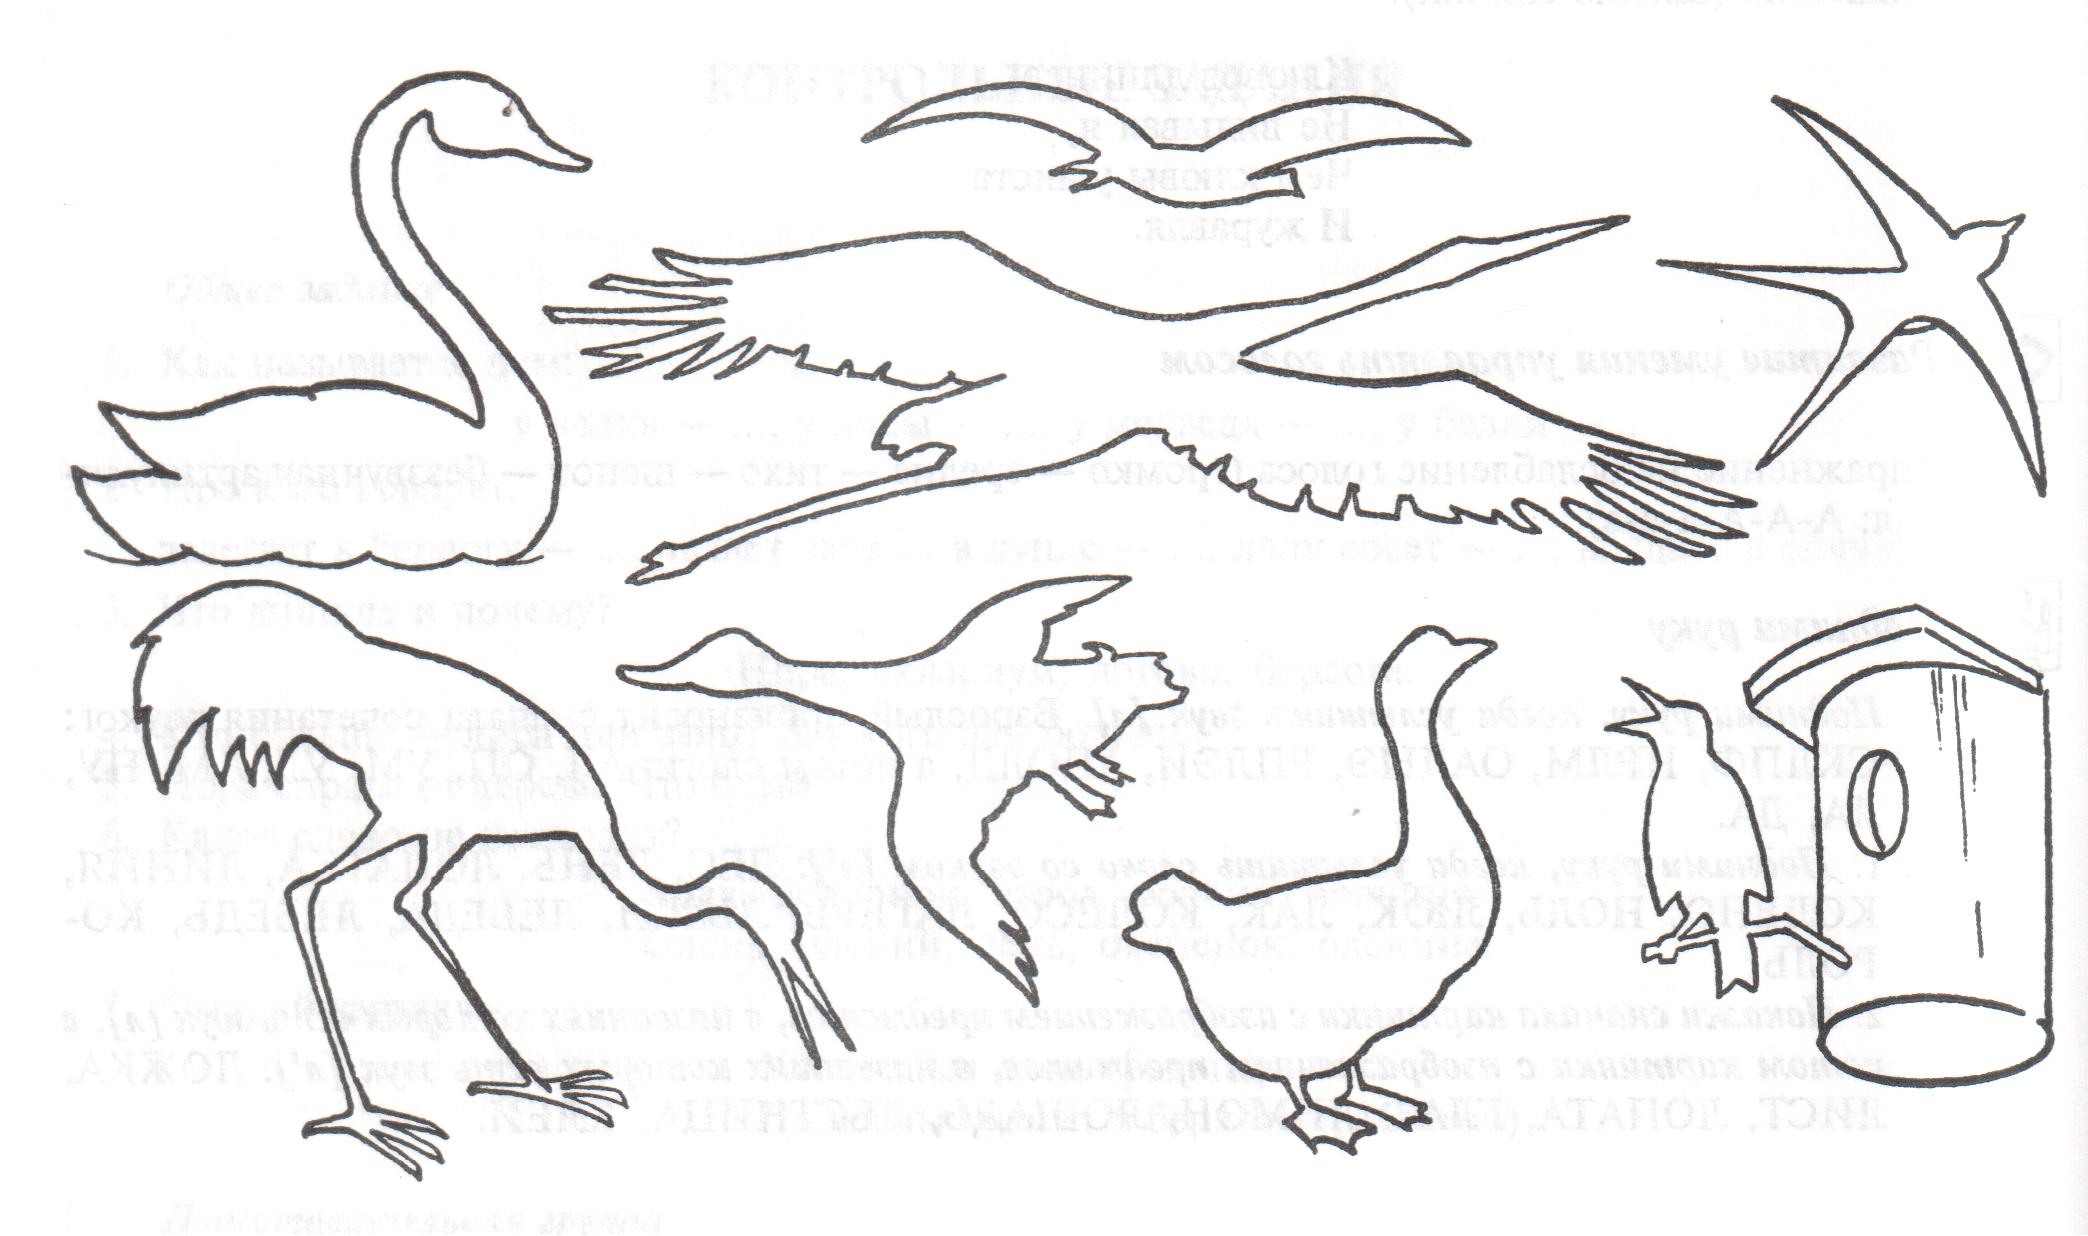 Перелетные птицы задания логопеда